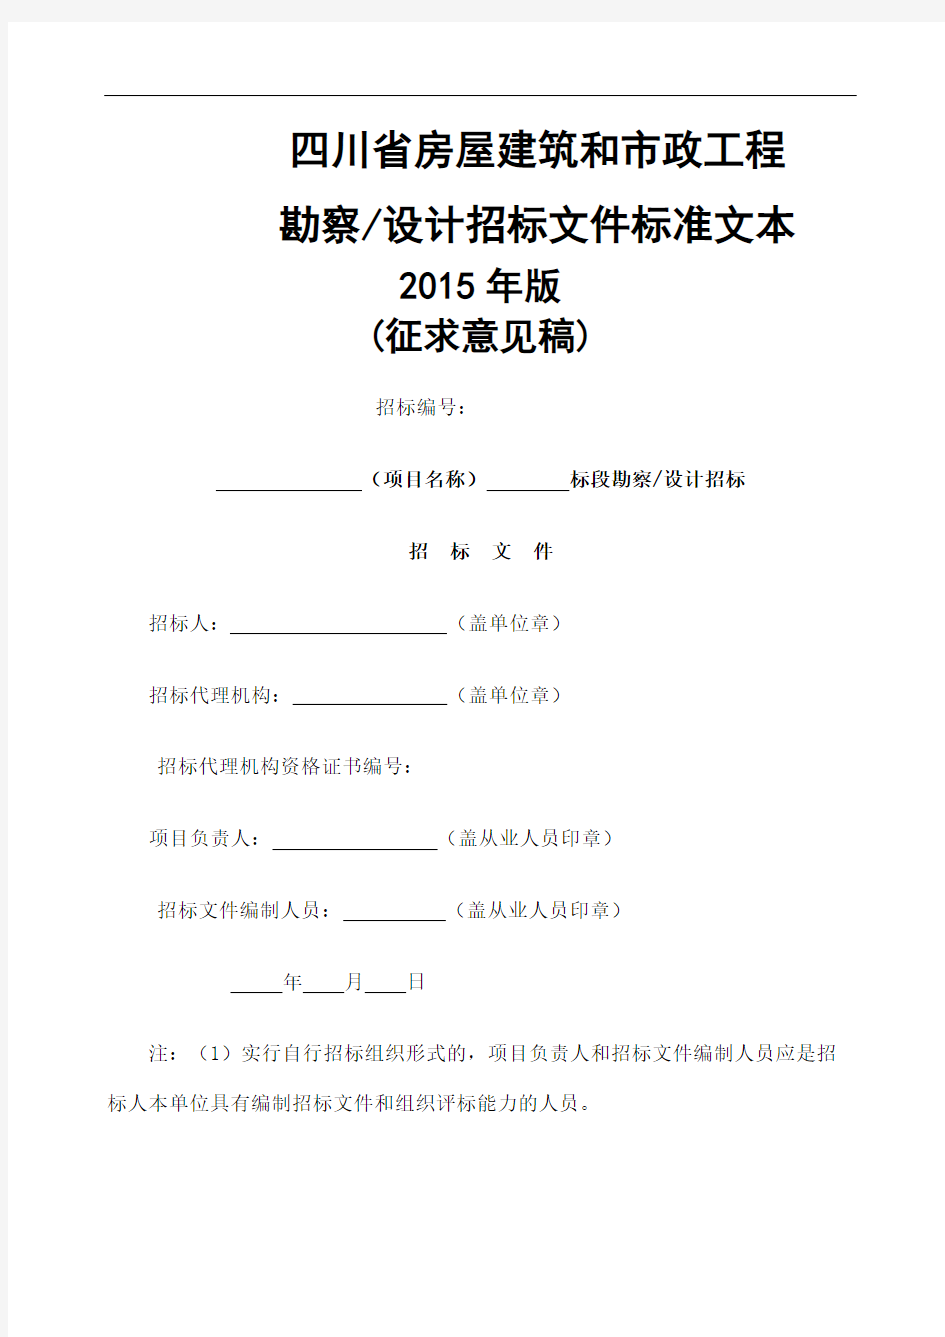 四川省房屋建筑和市政工程勘察设计招标文件征求意见稿